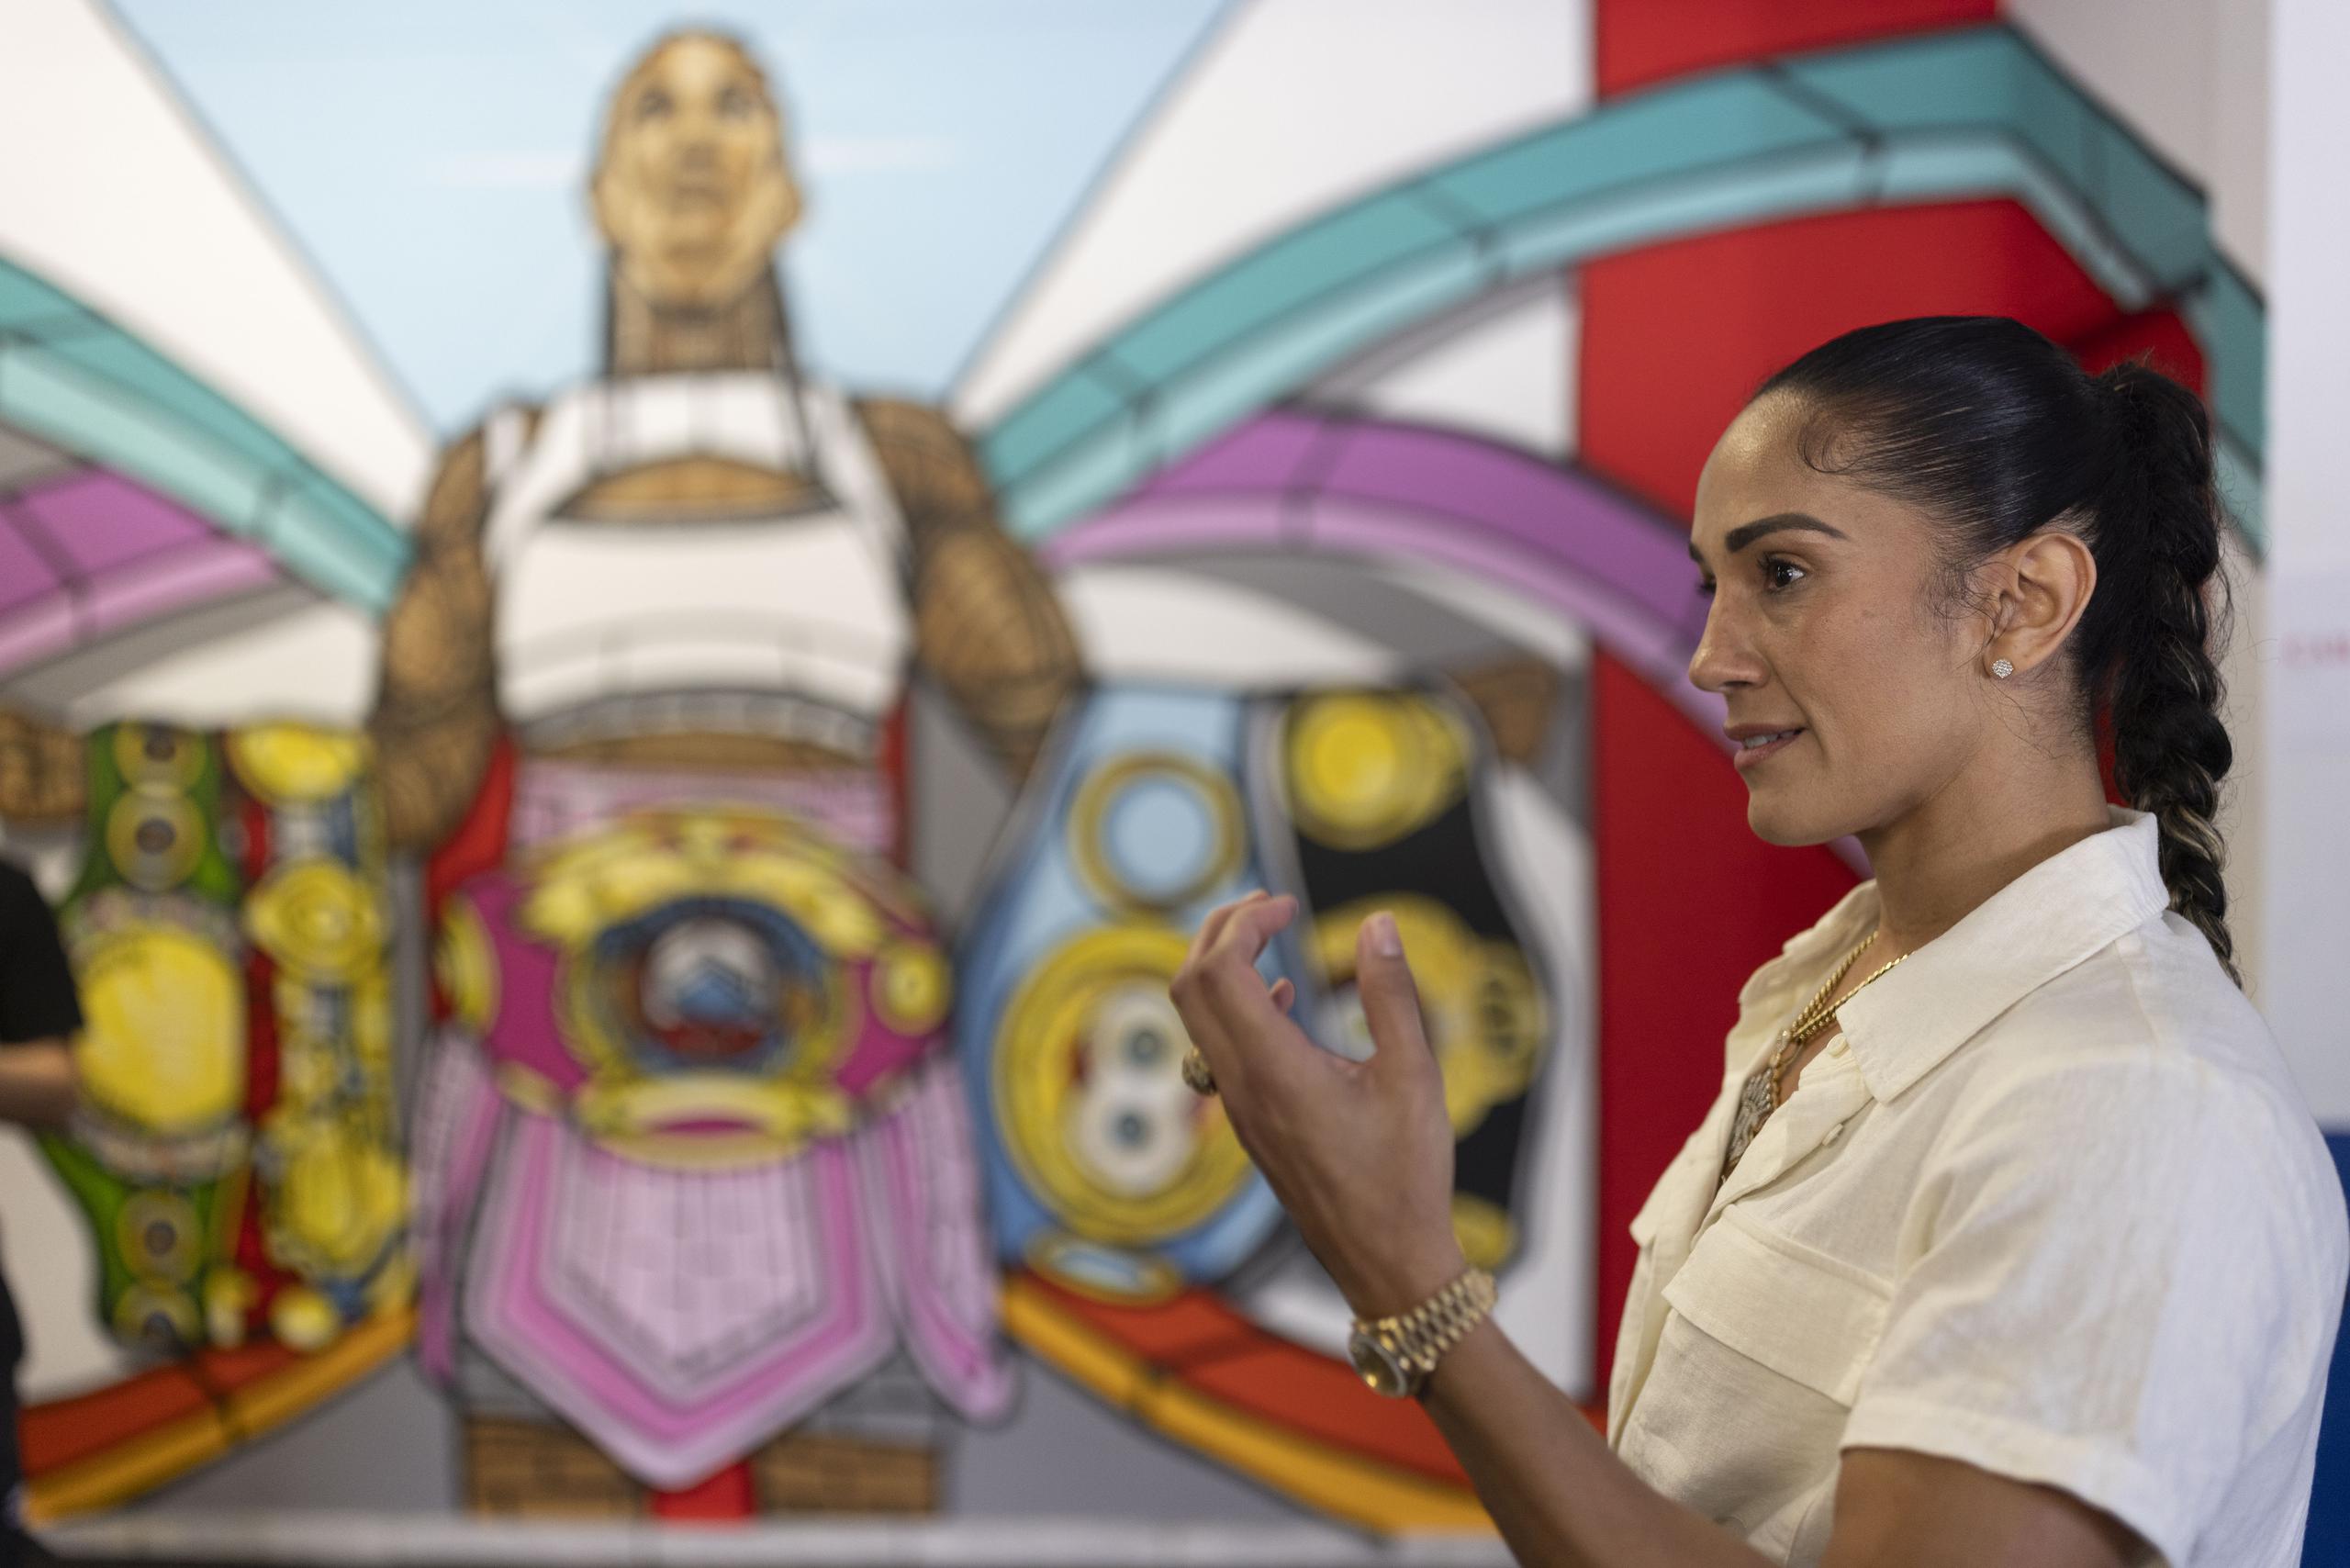 El gimnasio Municipal de Carolina incluyó en su renovación la creación de un mural dedicado a la campeona boricua, Amanda Serrano. 